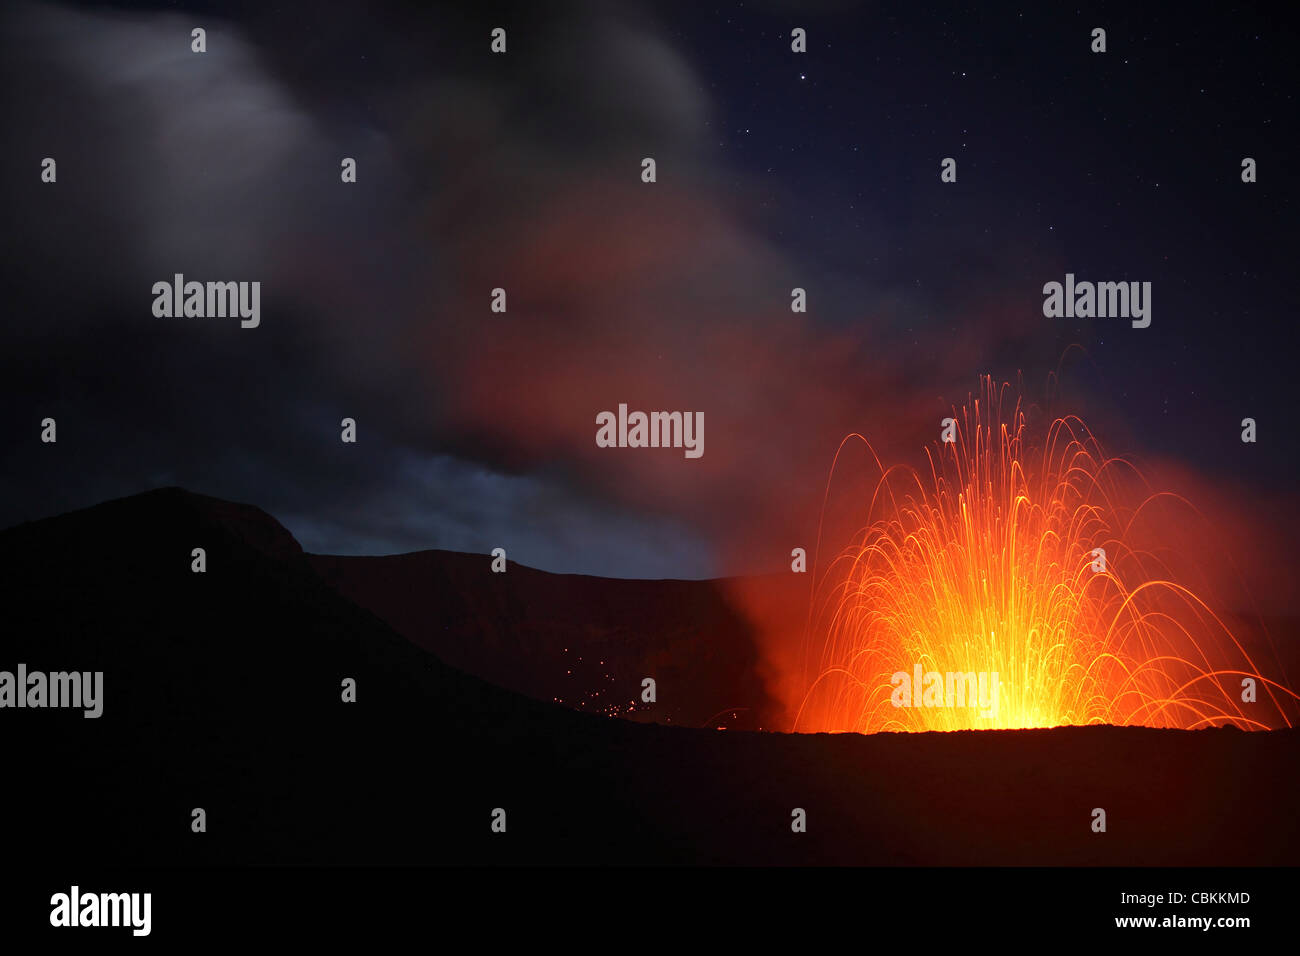 June 2, 2010 - Strombolian eruption on starlit night, Yasur Volcano, Tanna Island, Vanuatu. Stock Photo